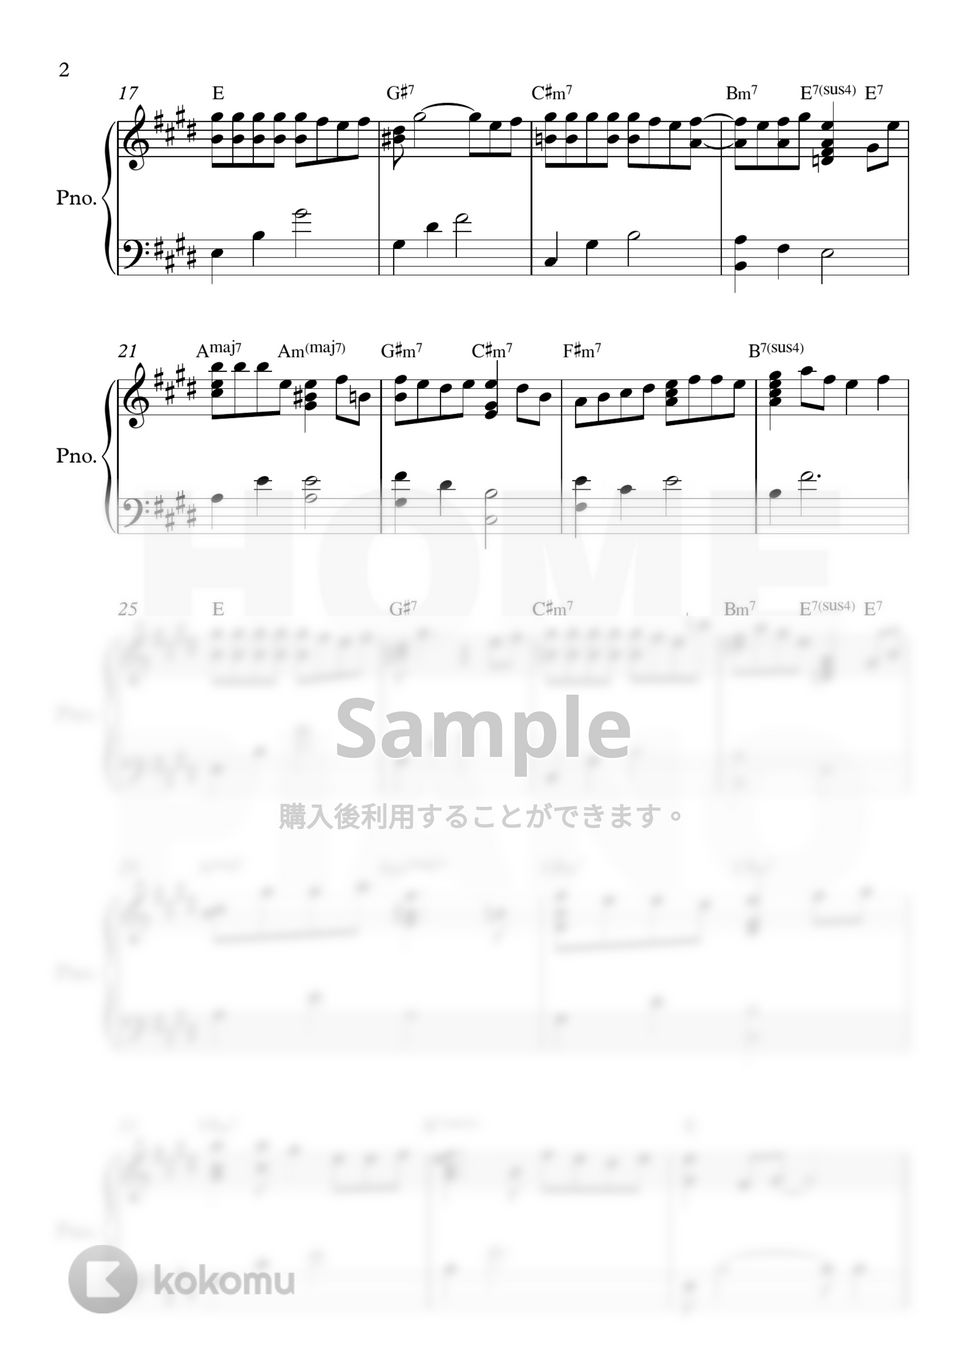 チョン・サングン - 愛というメロはない (中級) by HOME PIANO